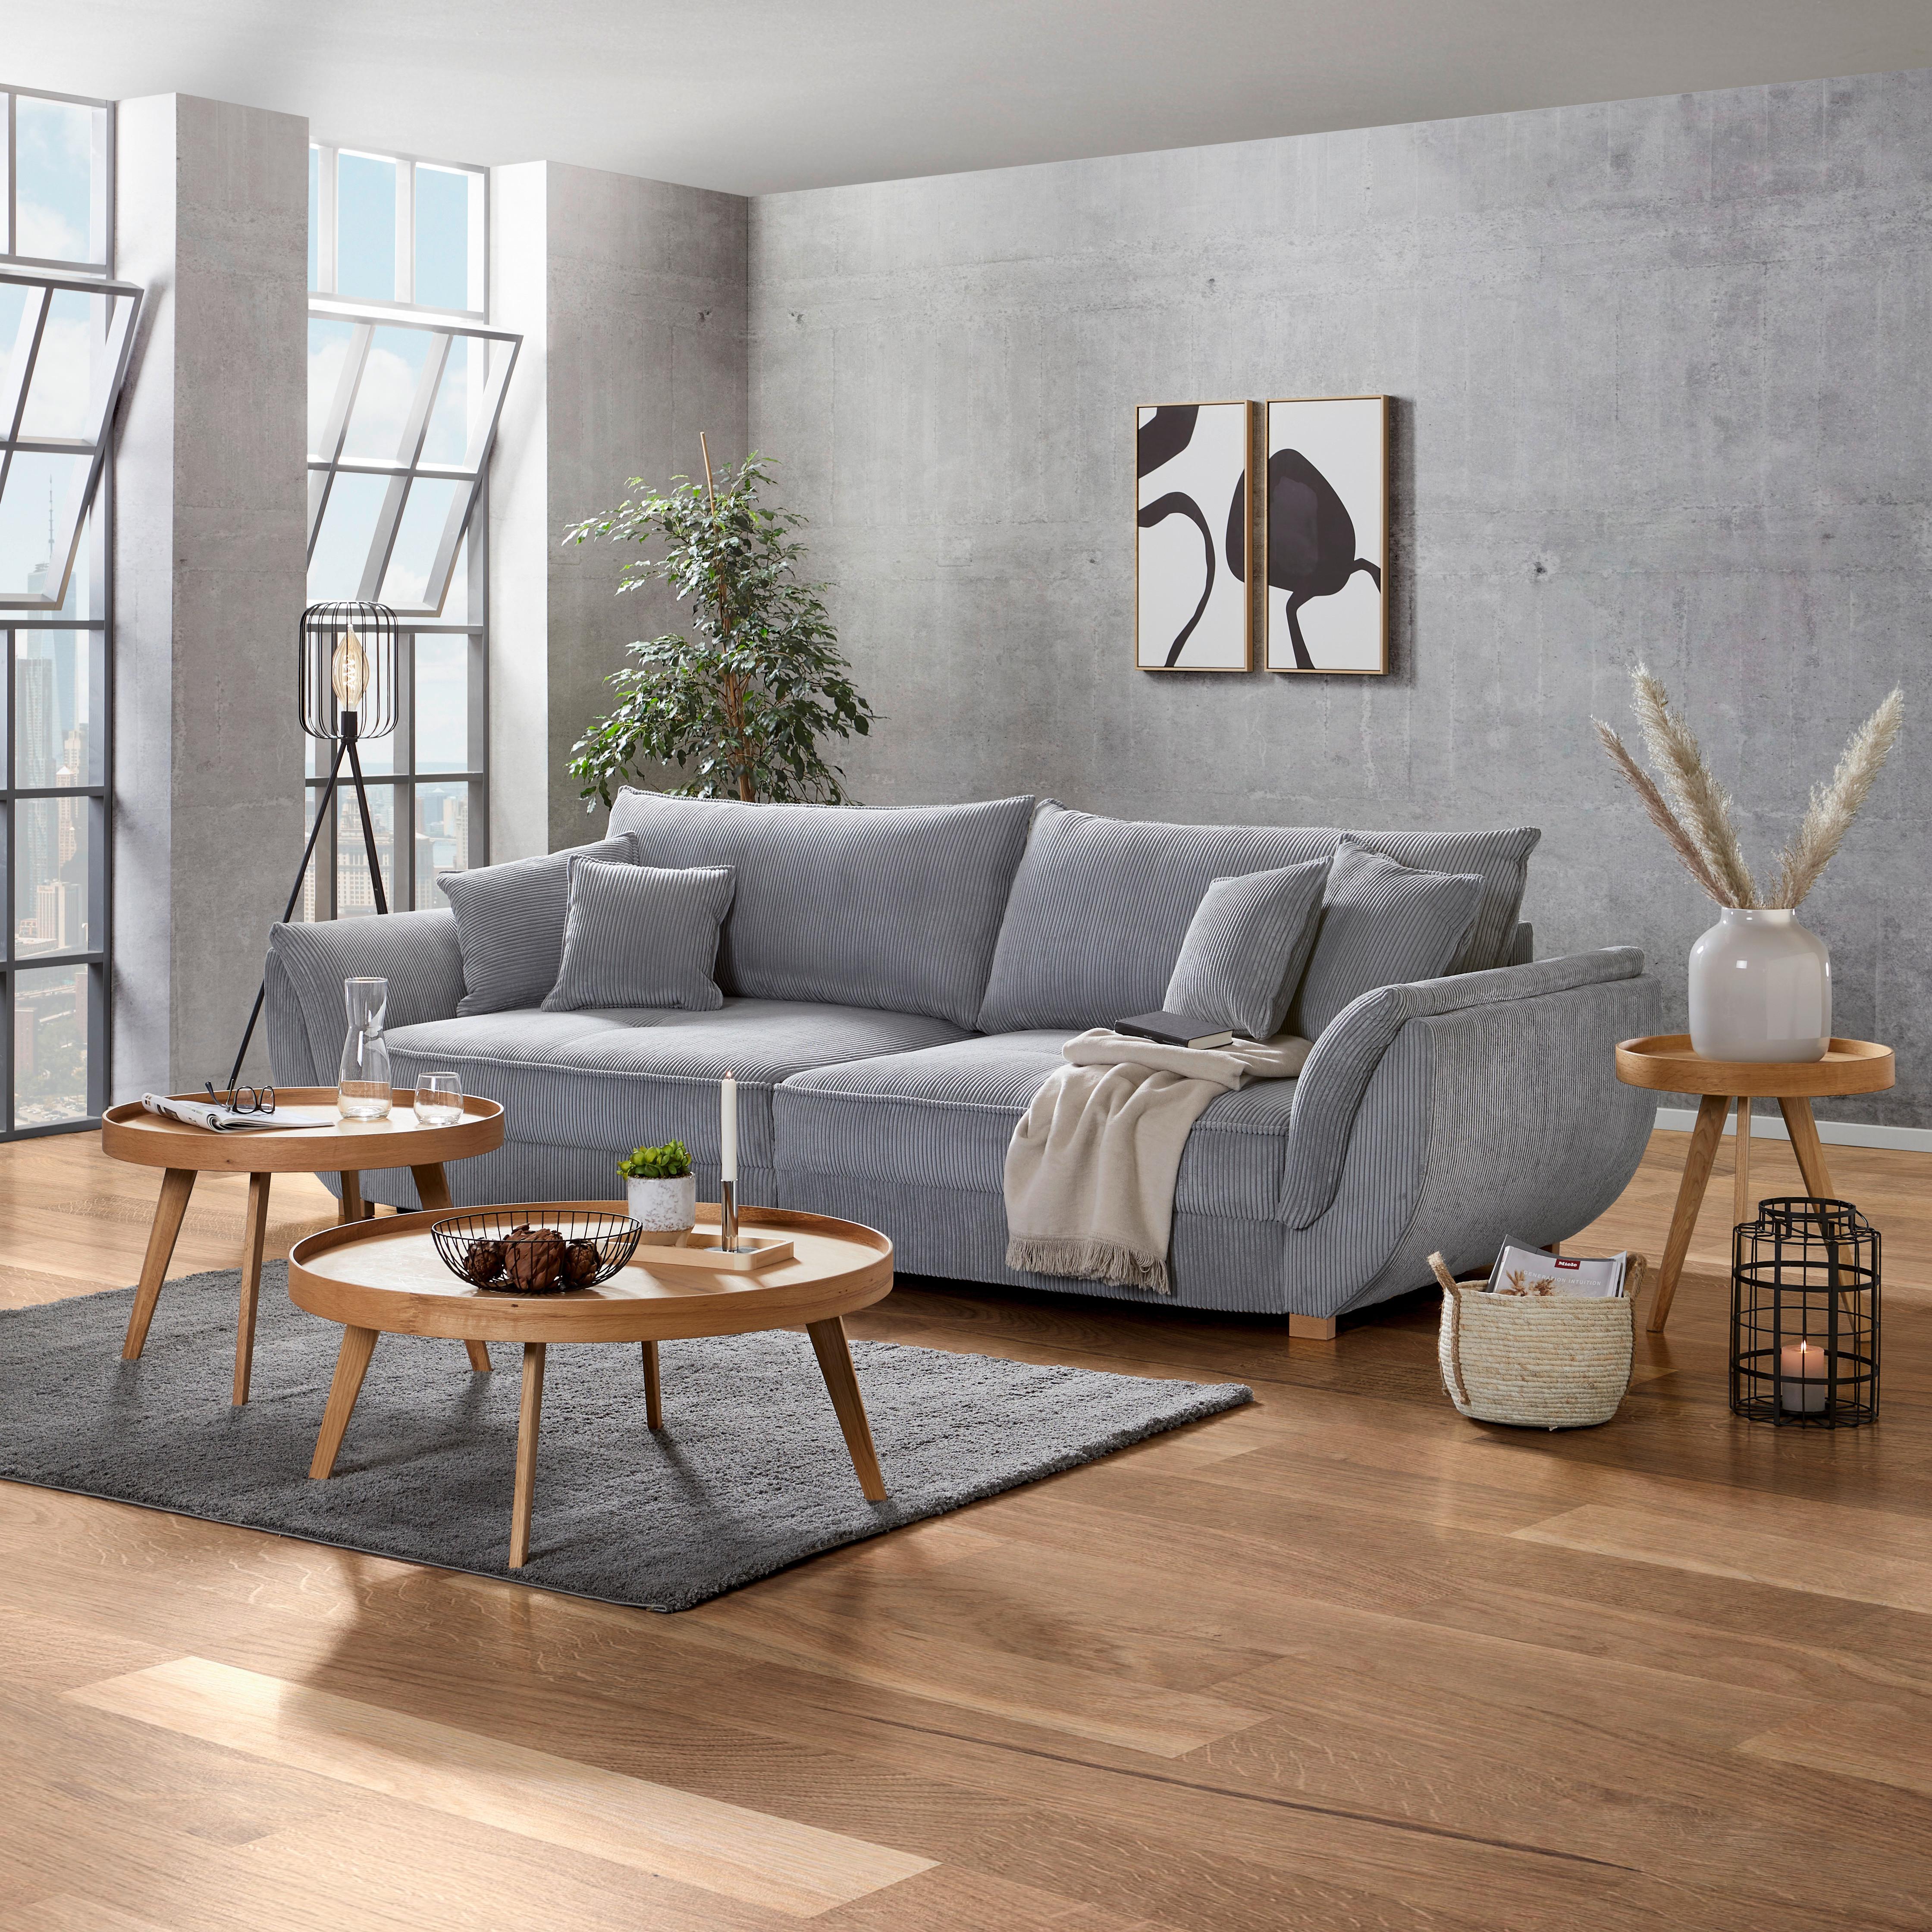 Xxxl Sofa Guarda - prirodne boje/svijetlo siva, Modern, tekstil/drvo (301/92/114cm) - Modern Living